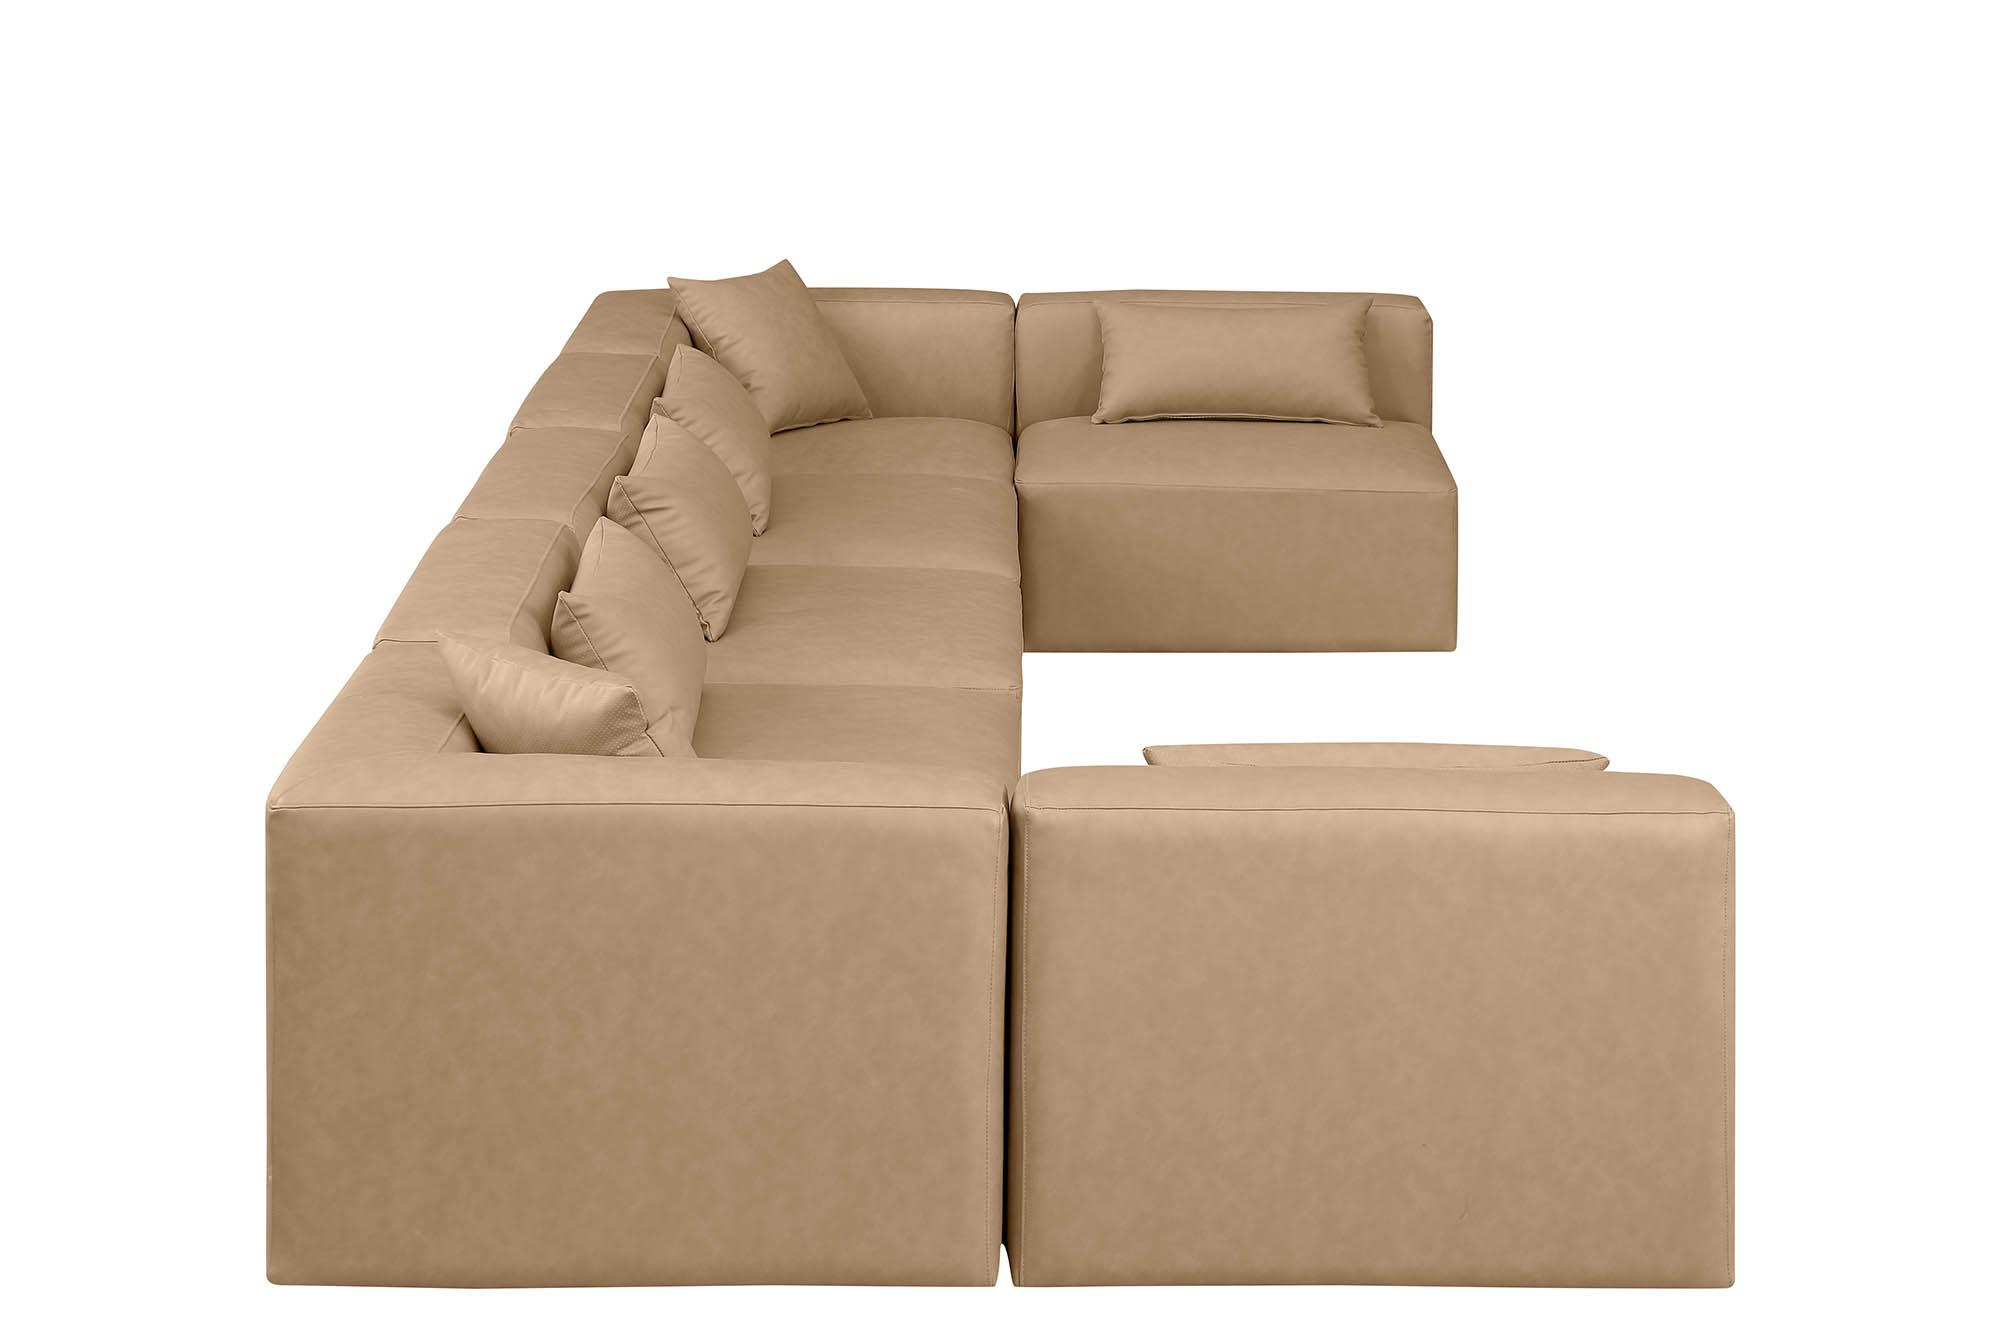 

    
Meridian Furniture CUBE 668Tan-Sec7B Modular Sectional Sofa Tan 668Tan-Sec7B
